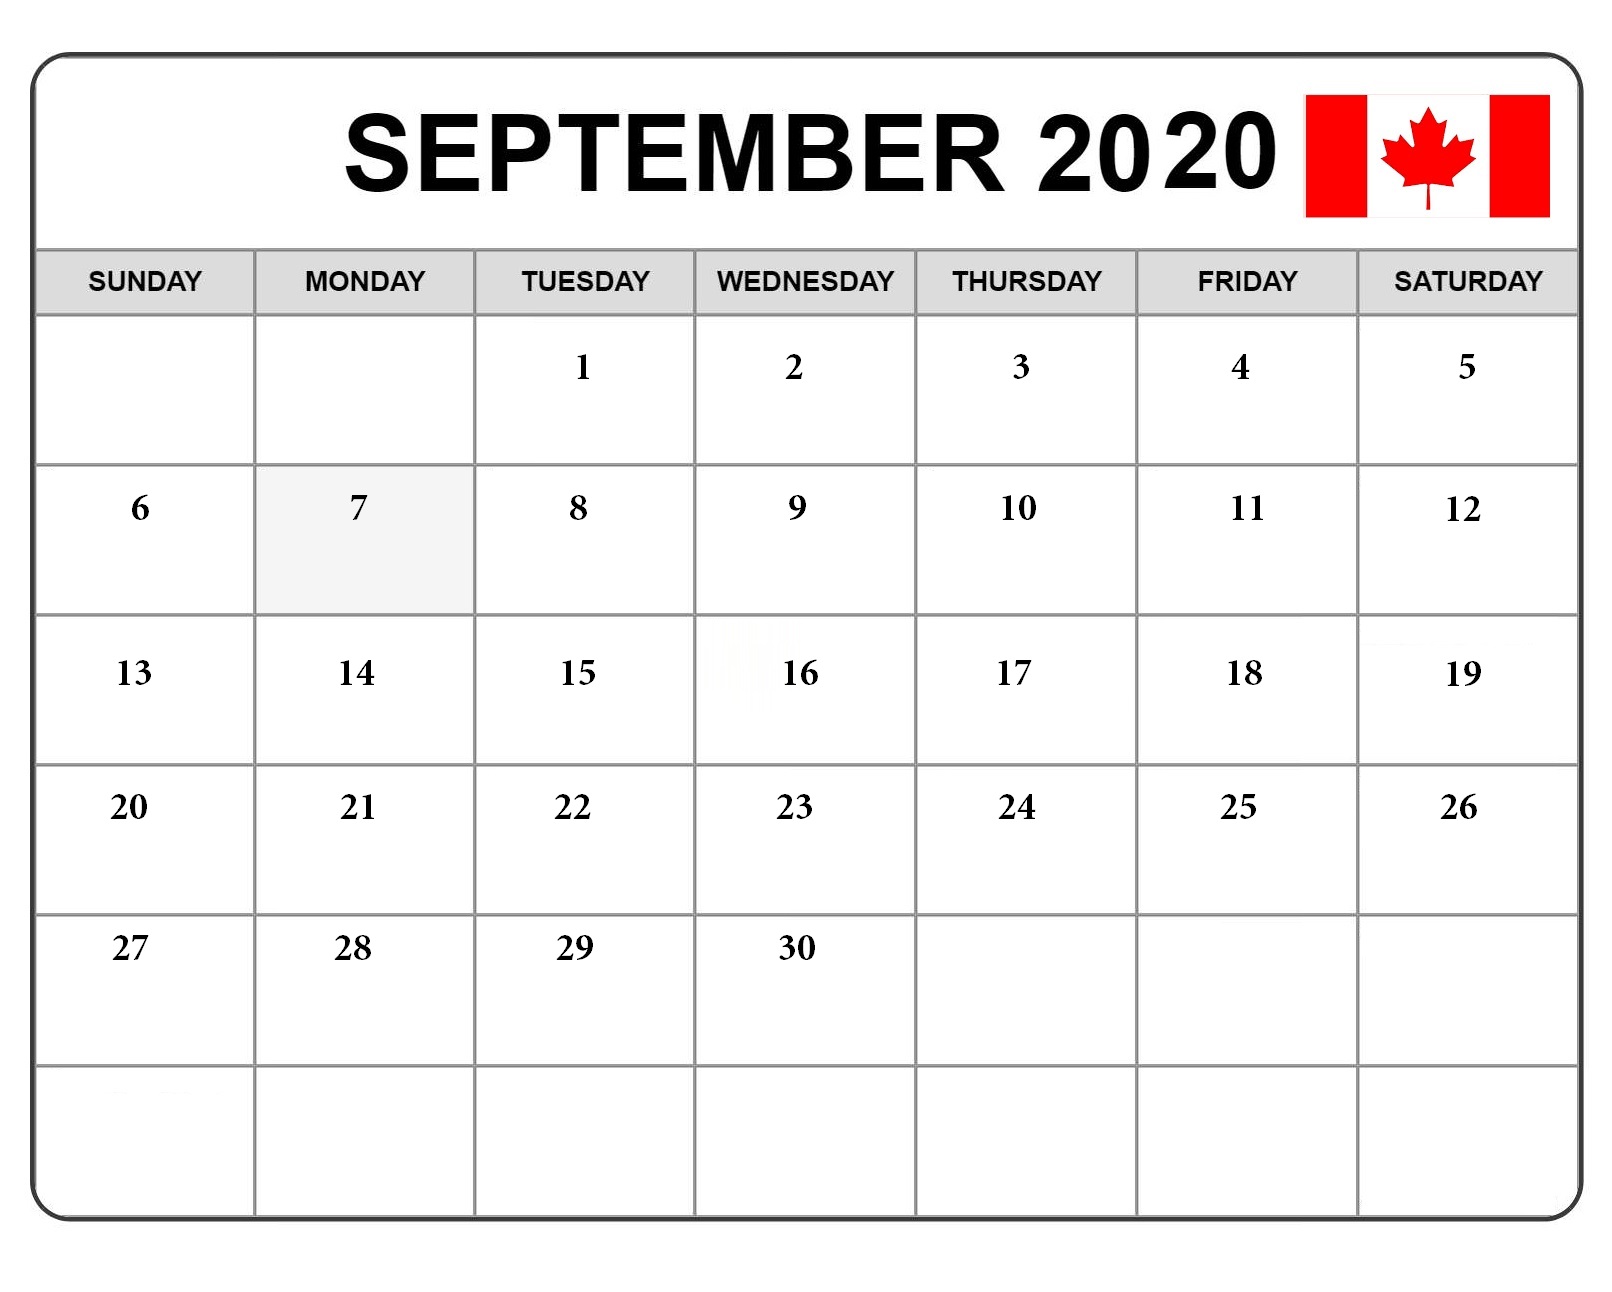 September 2020 Calendar Canada